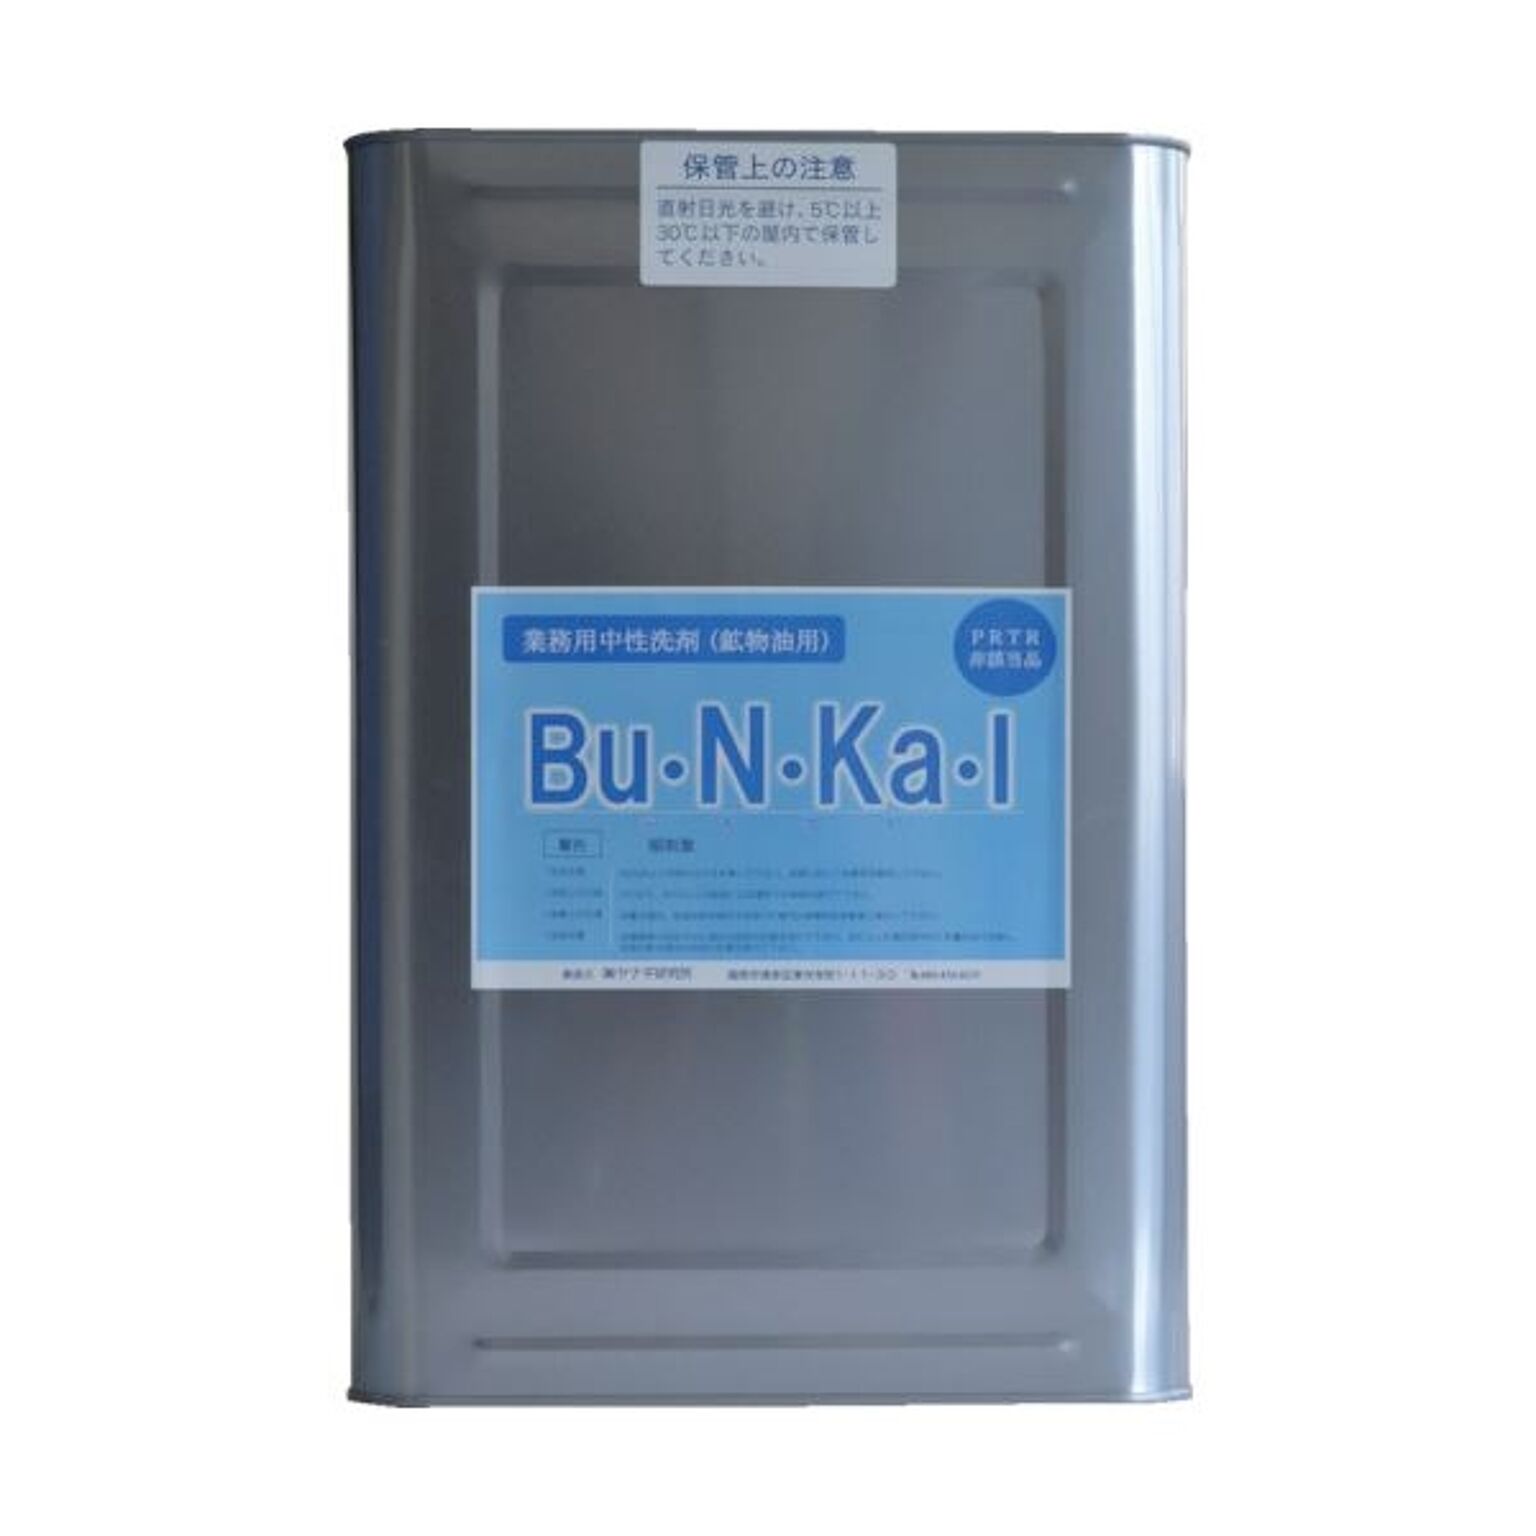 ヤナギ研究所 鉱物油用中性洗剤Bu・N・Ka・I 18L缶 BU-10-K 1缶